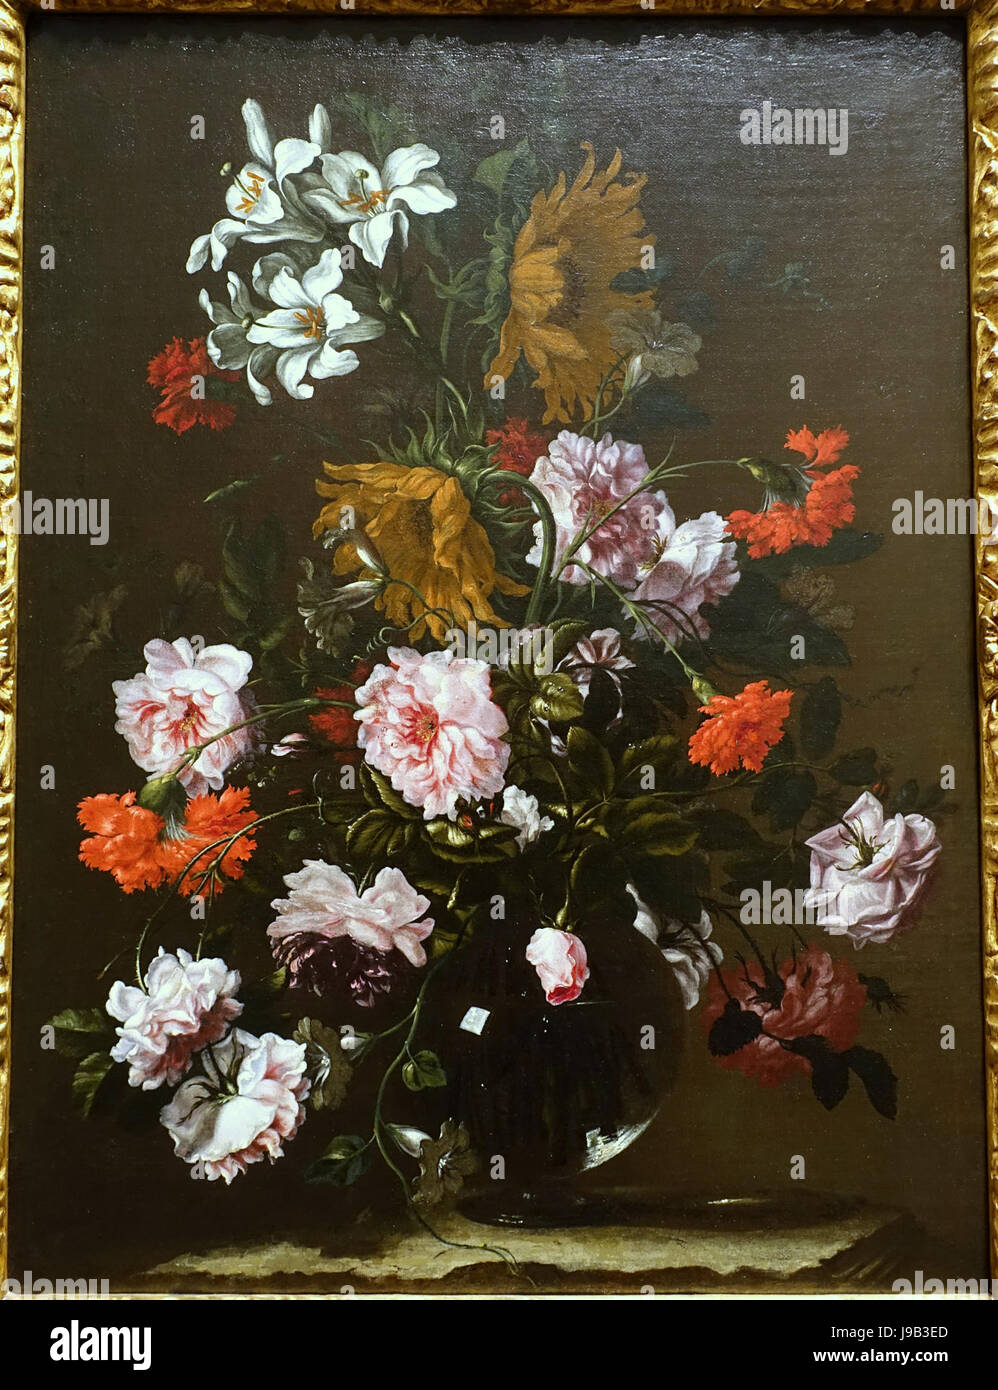 Nature morte avec fleurs dans un vase en verre, Bortolome Perez, Madrid, 1670, huile sur toile Blanton Museum of Art, Austin Texas DSC07829 Banque D'Images